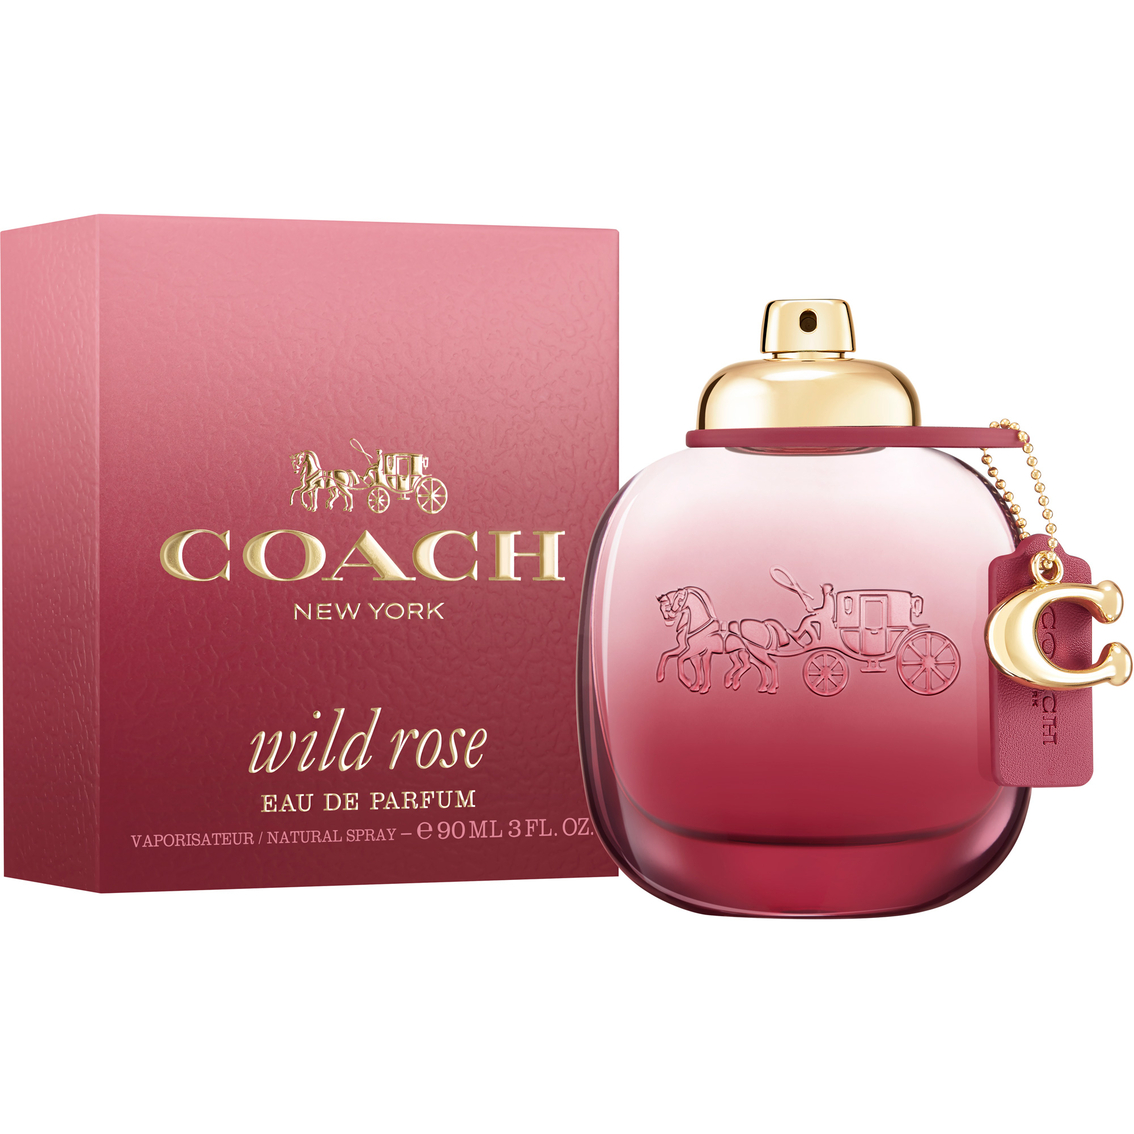 COACH Wild Rose Eau de Parfum - Image 2 of 2